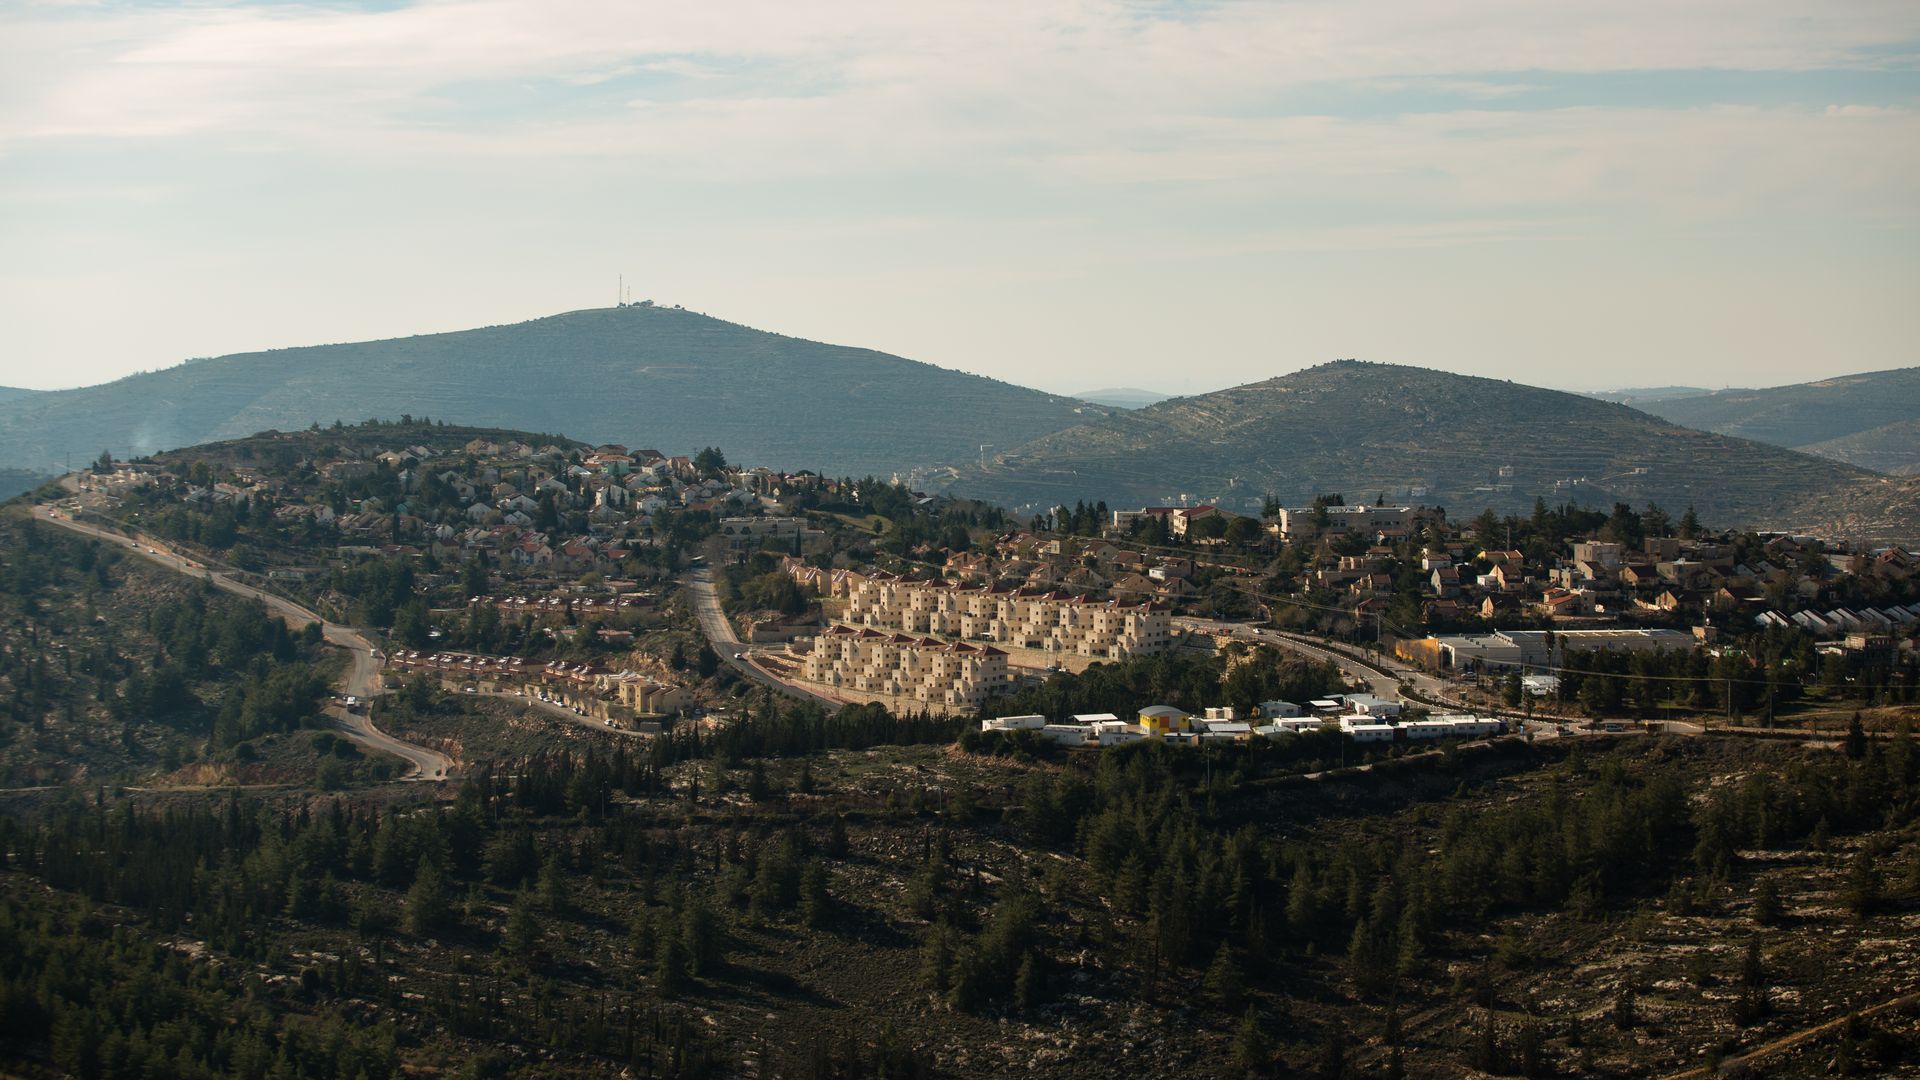 Israeli settlements in the West Bank region